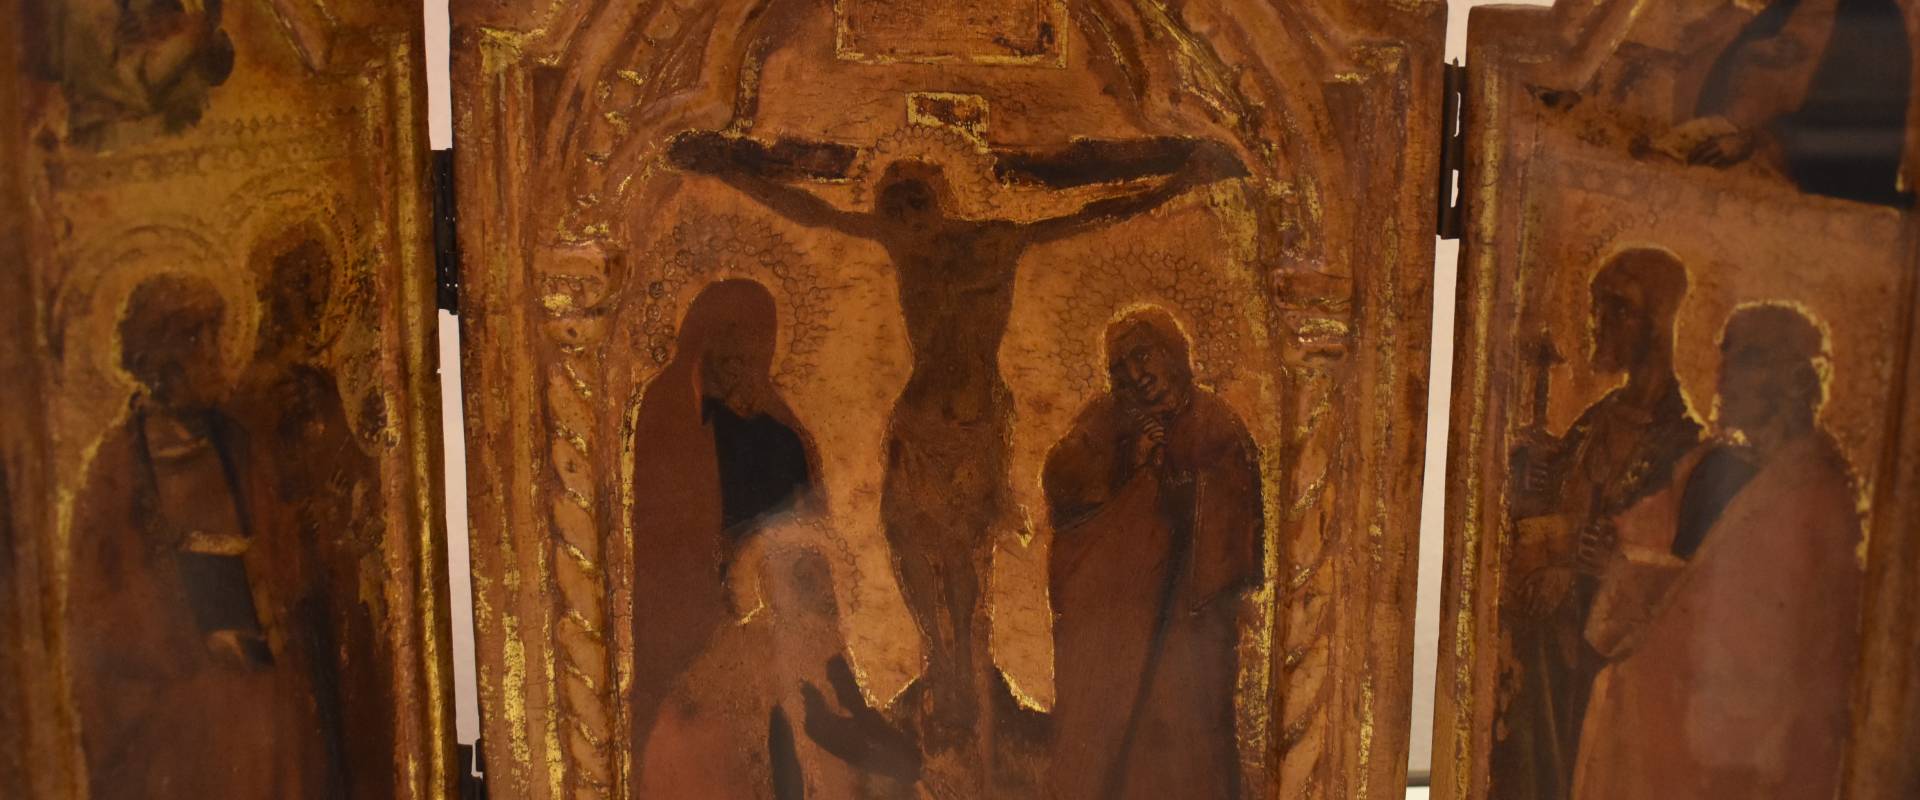 Simone dei Crocifissi, Trittico della Crocifissione, Pinacoteca Civica, Pieve di Cento 01 foto di Nicola Quirico